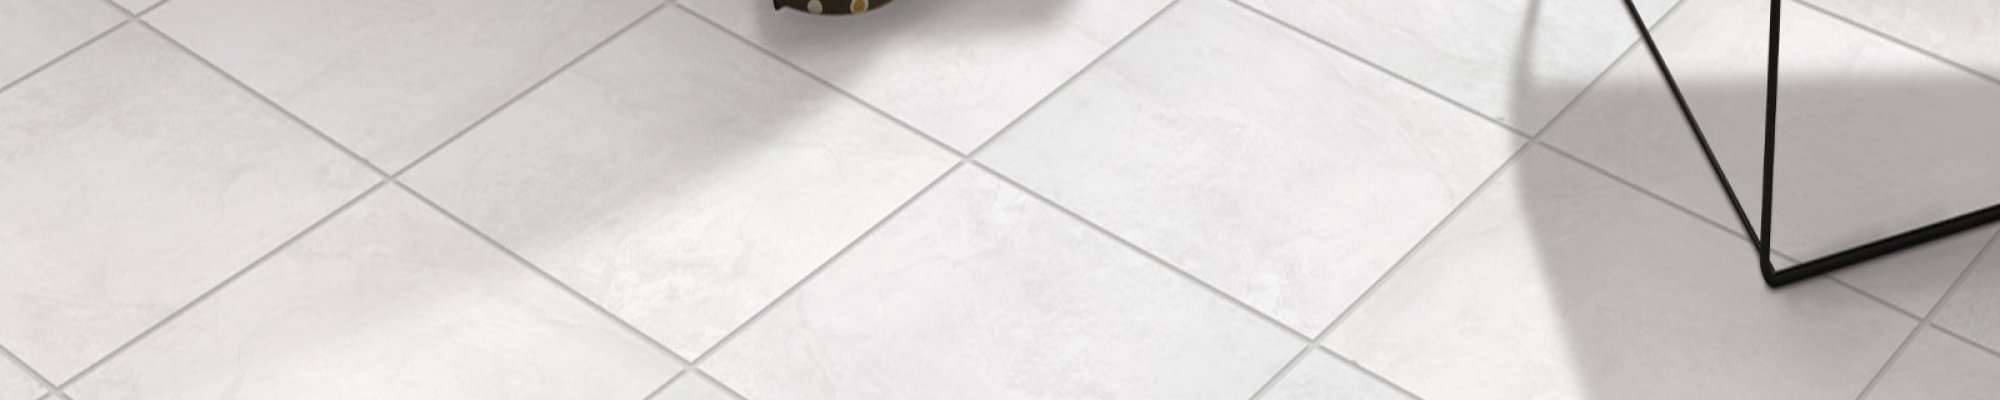 In-stock tile flooring from Gilbert's CarpetsPlus COLORTILE